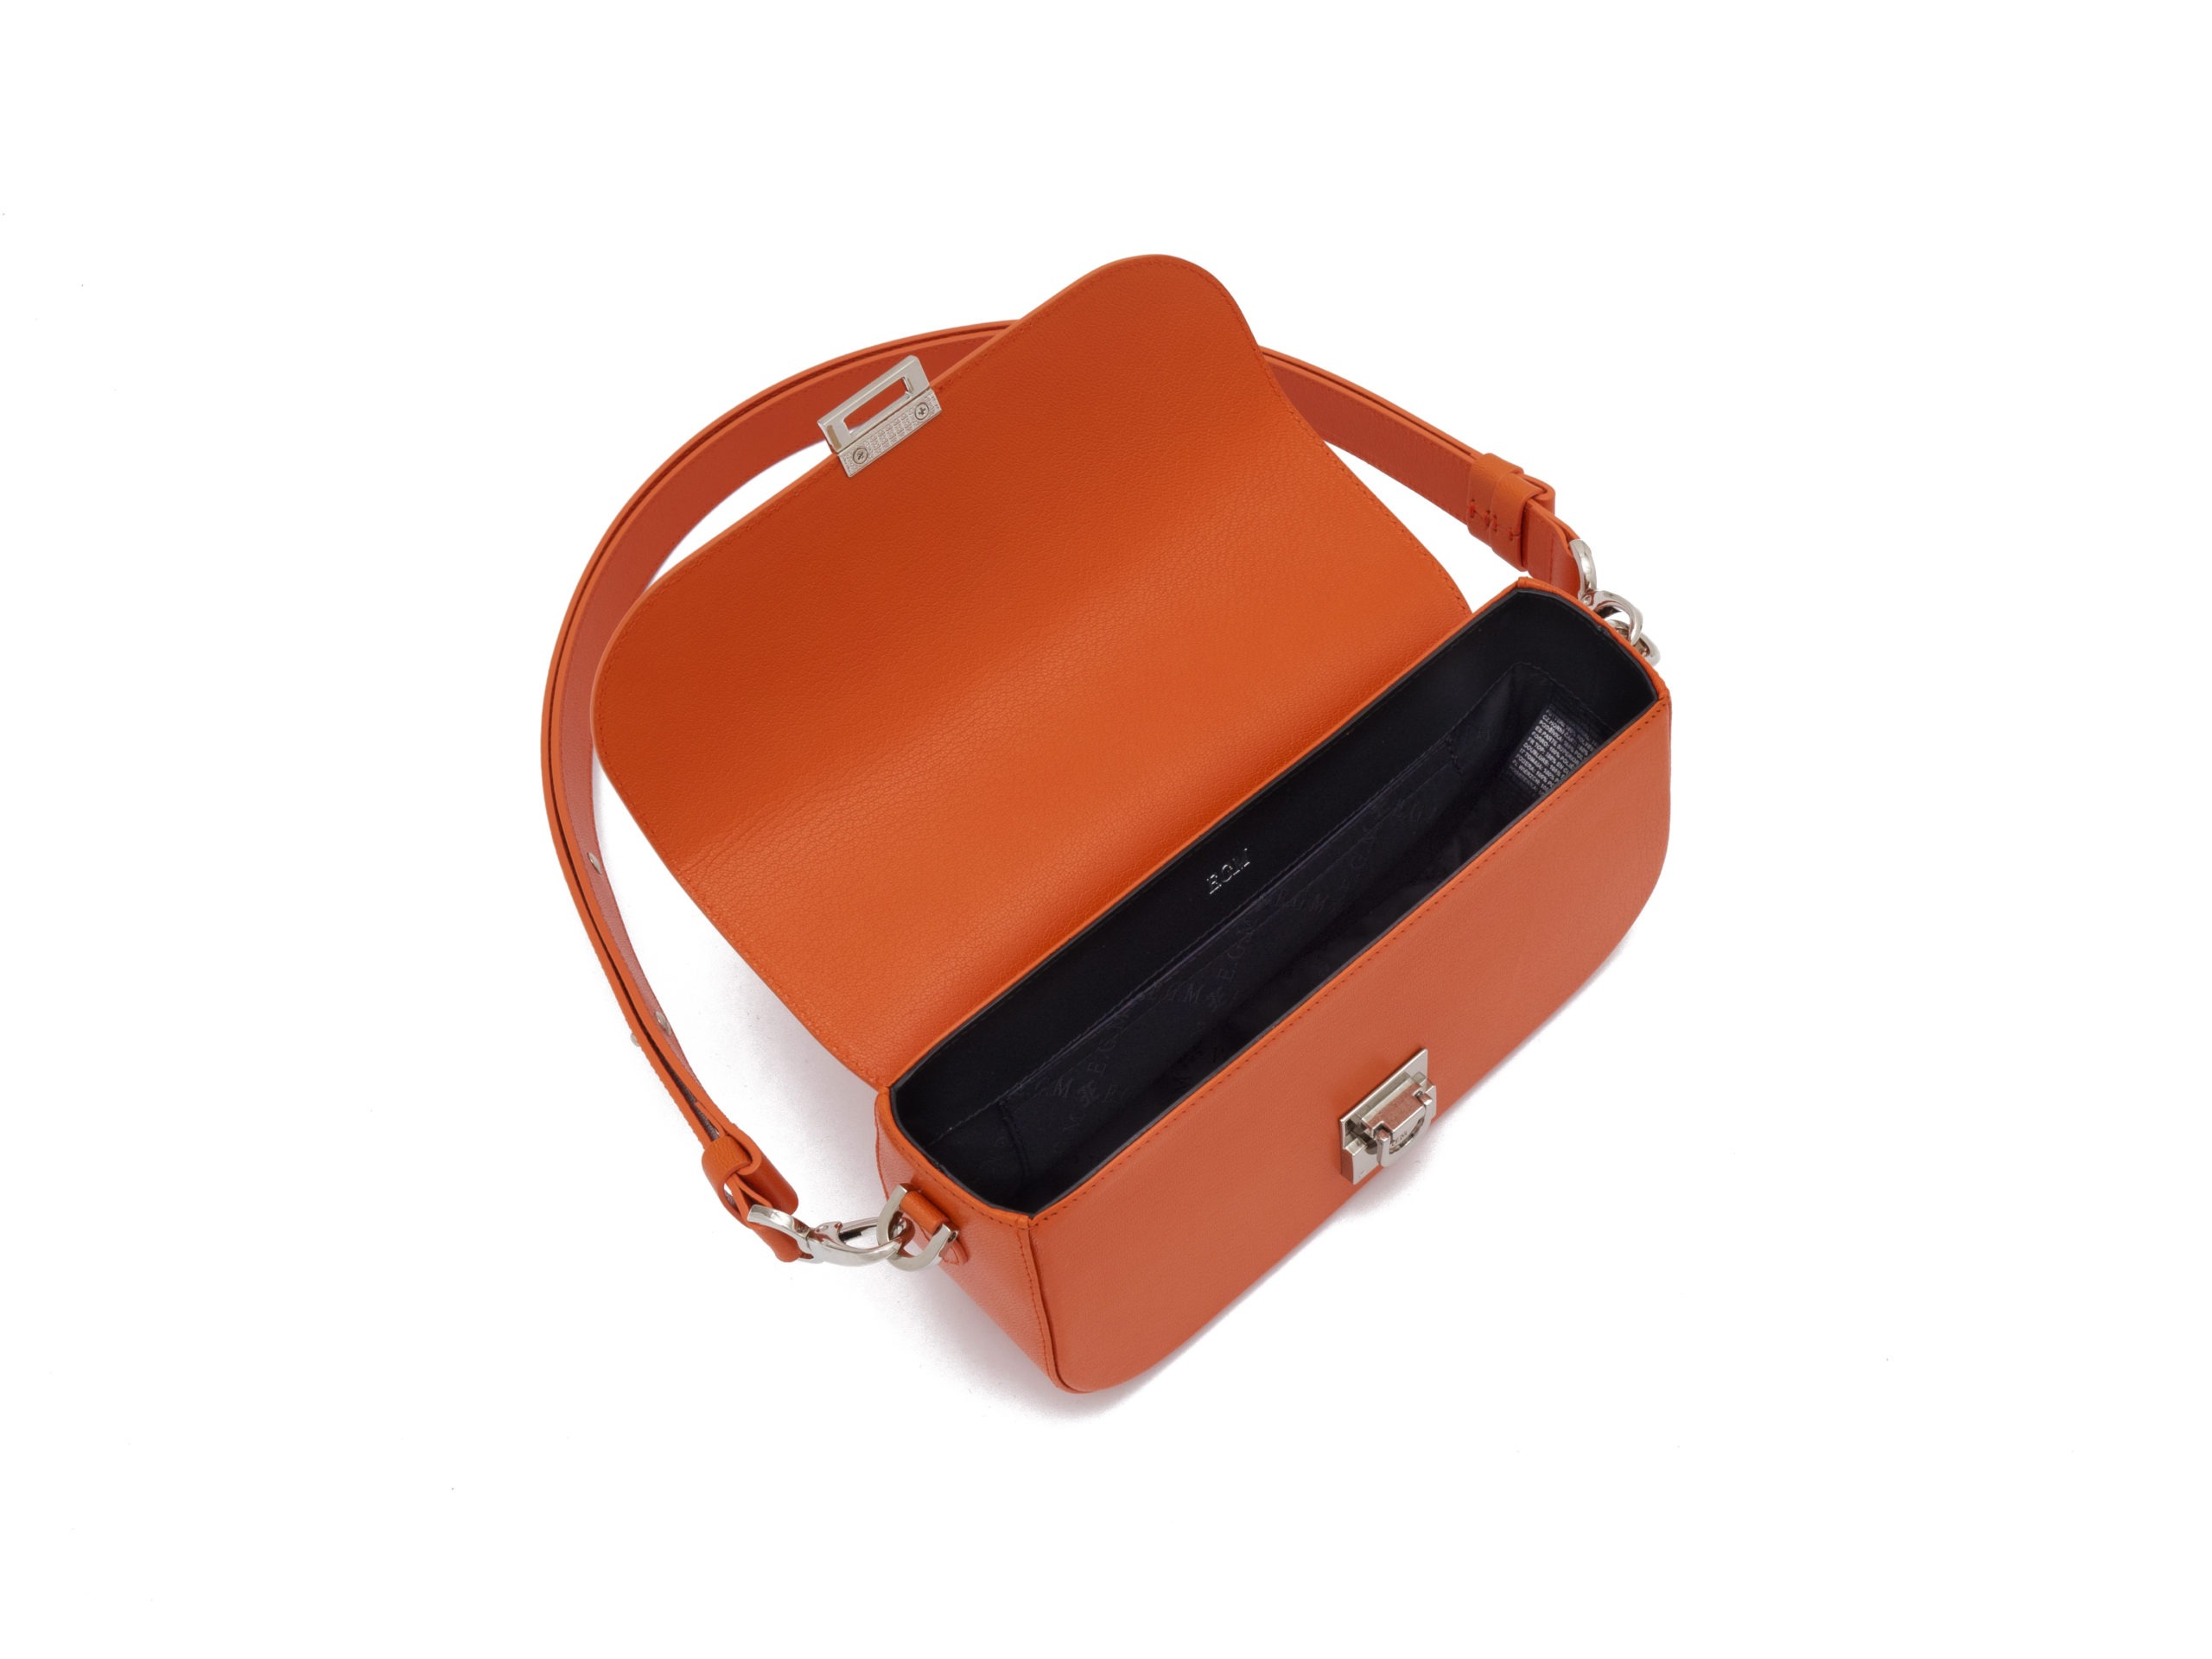 Женская мини сумка Millie EGM из кожи шевро оранжевого цвета